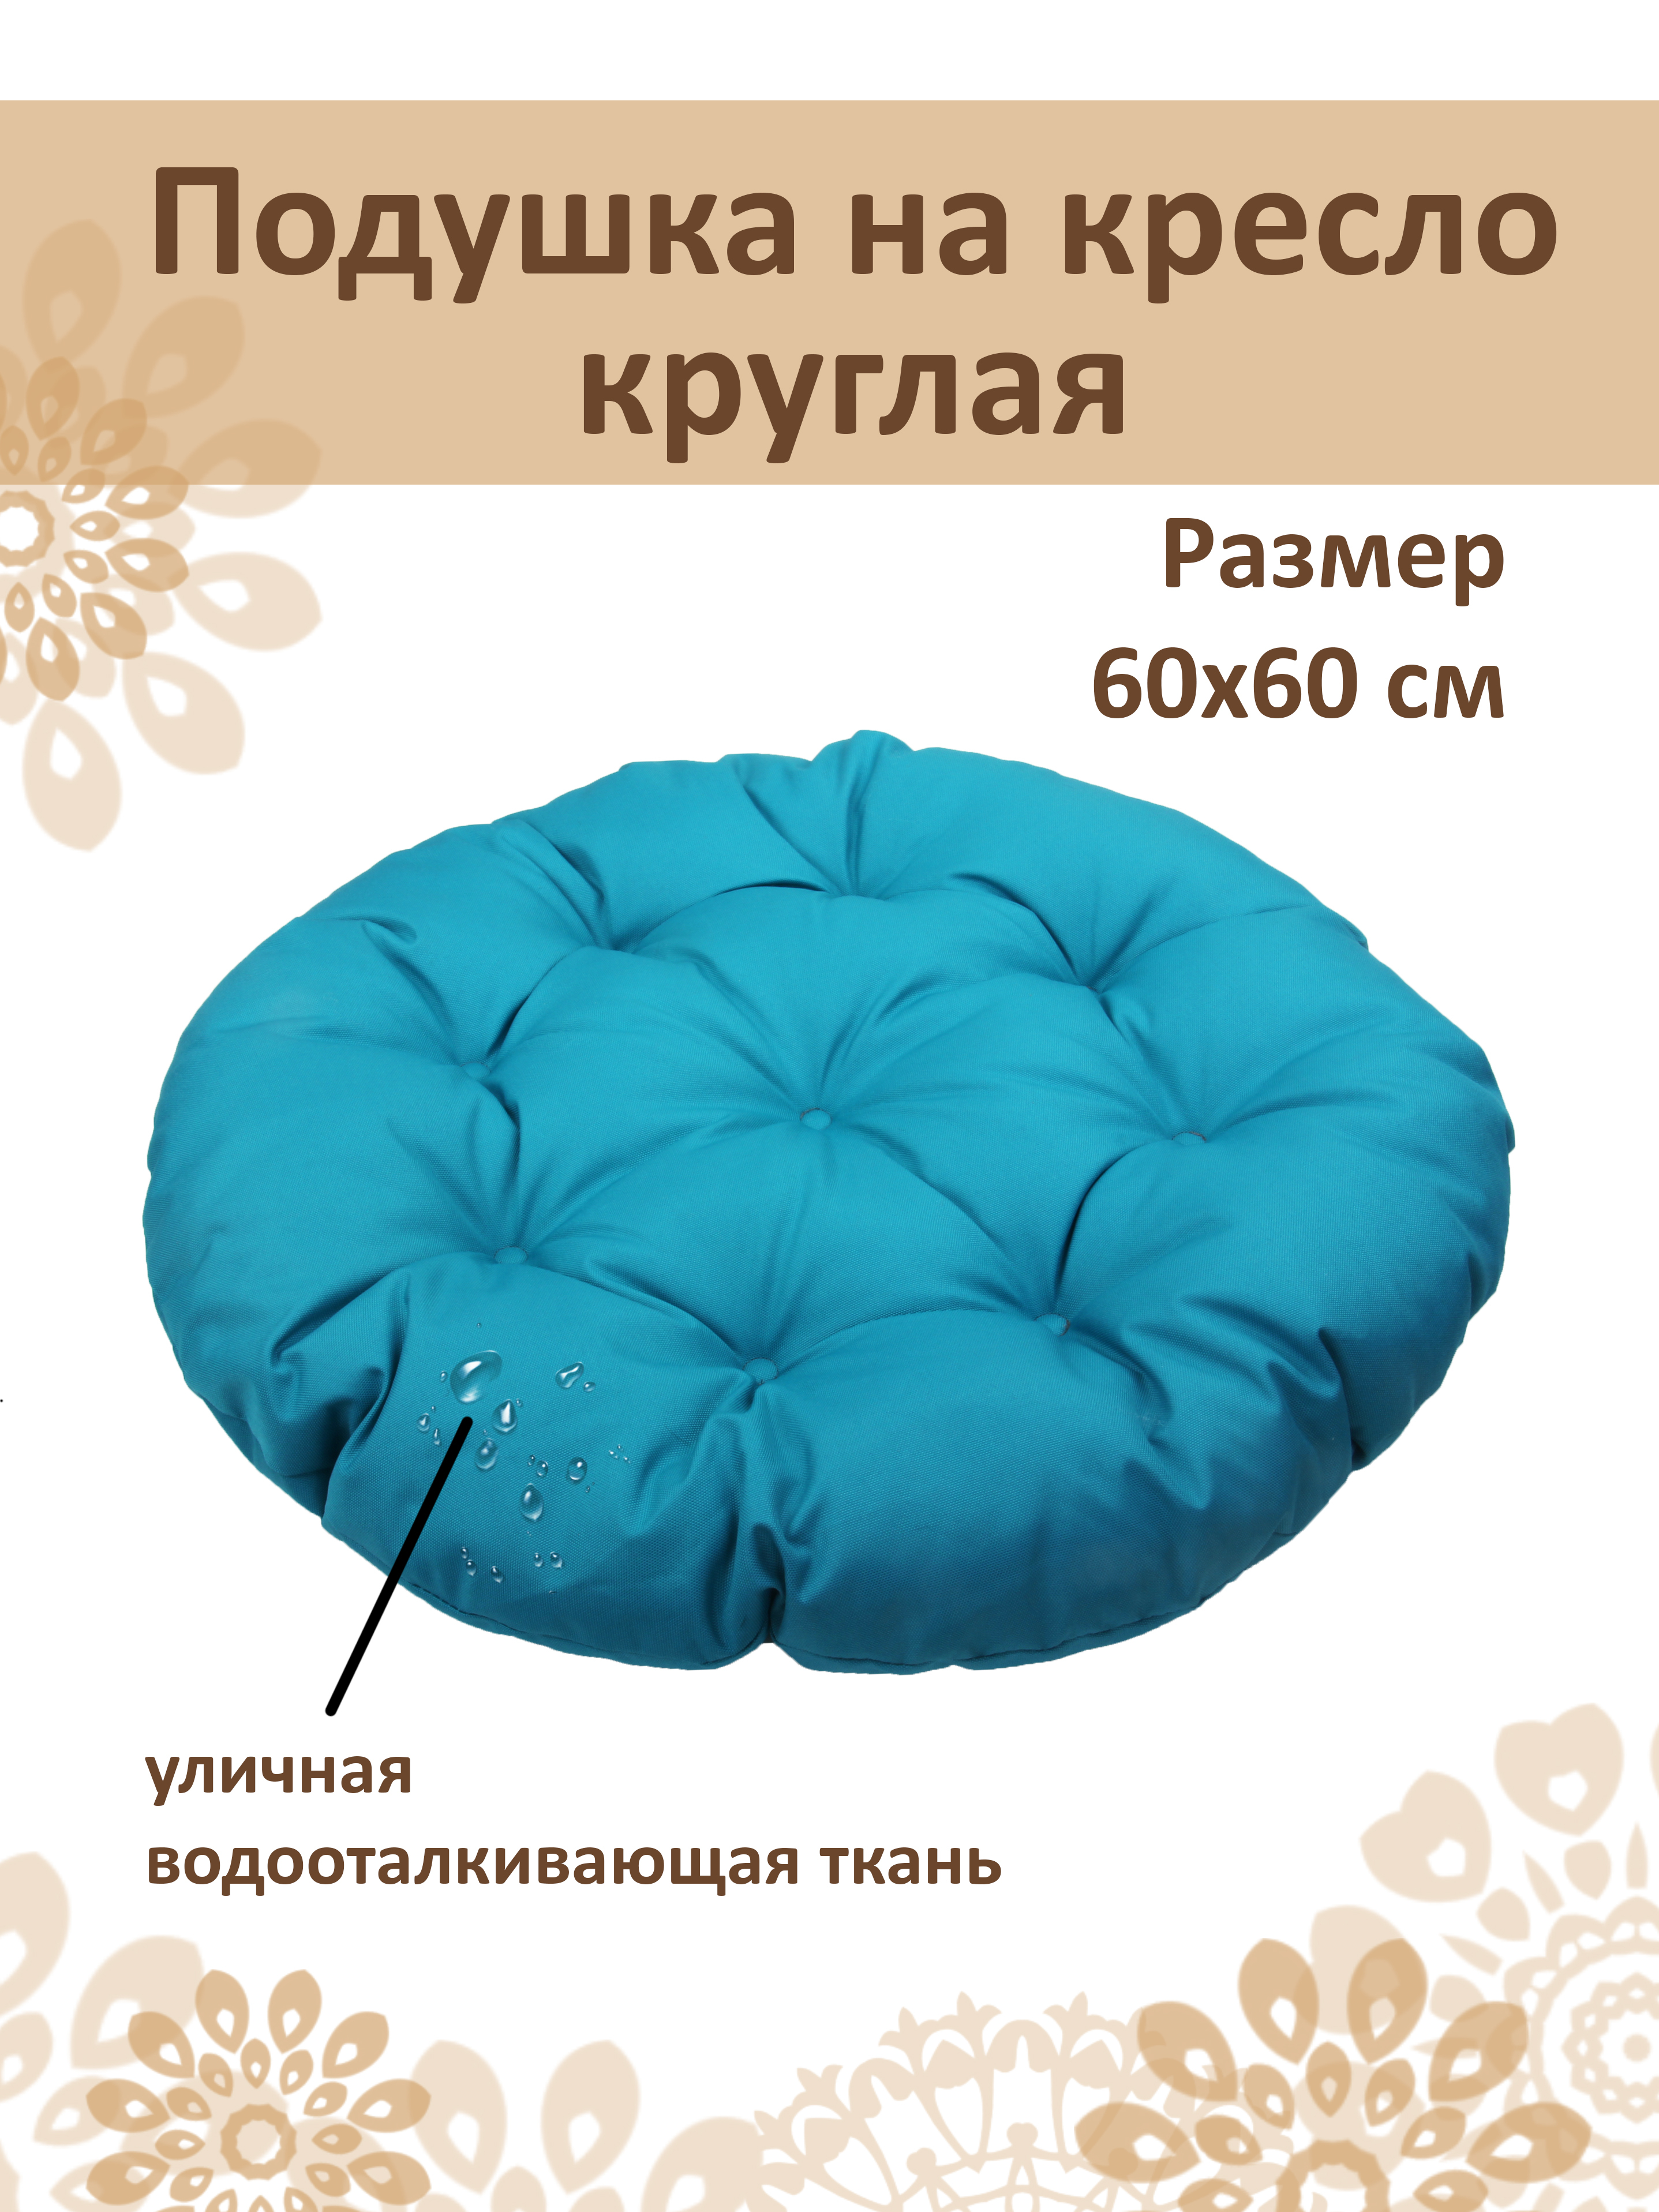 Как сшить круглую подушку на кресло